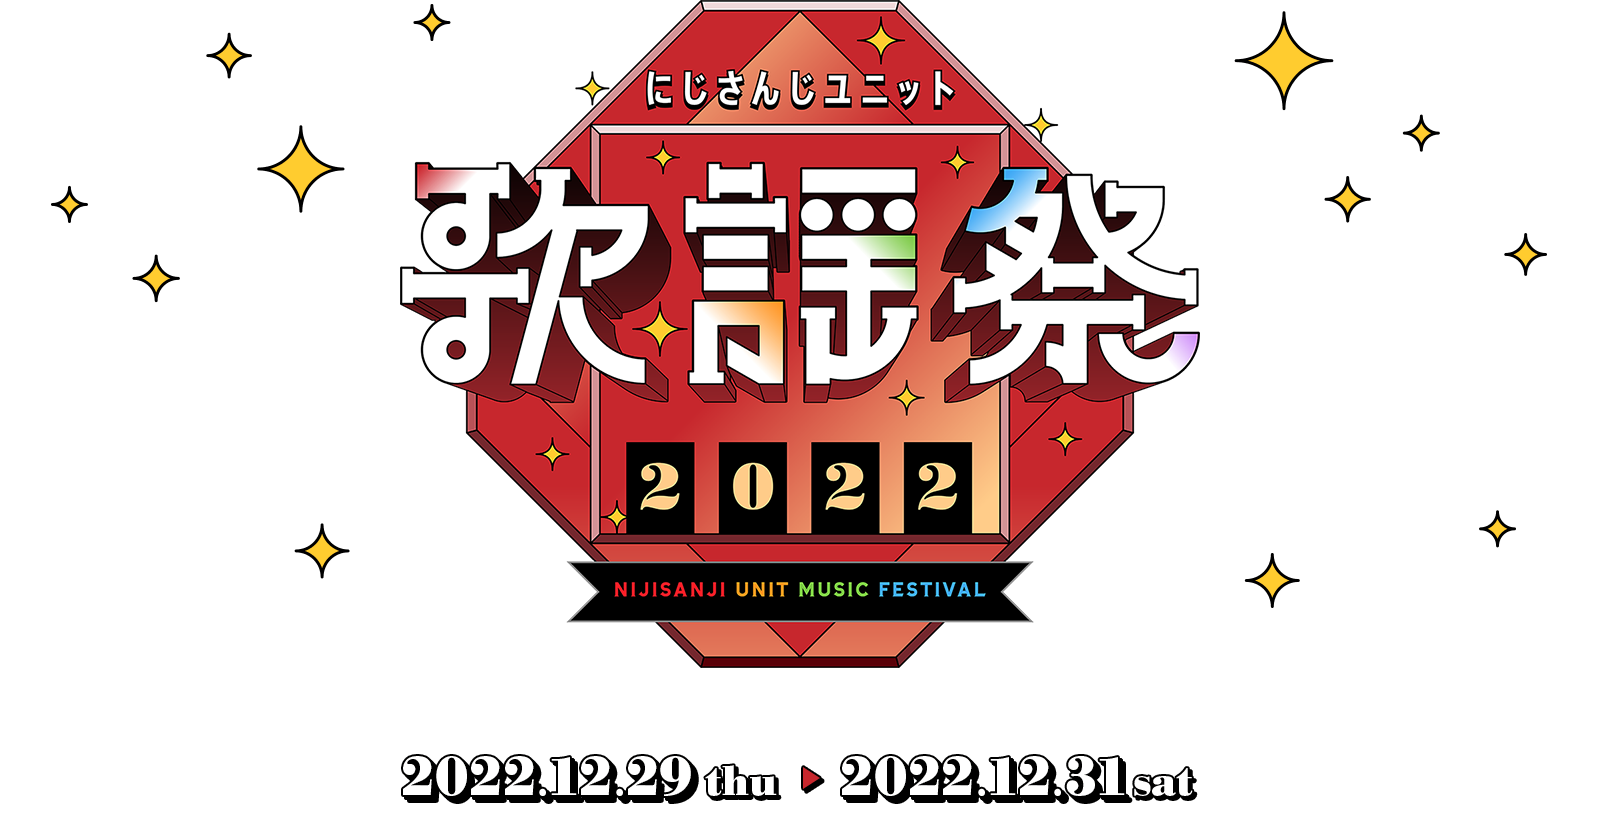 にじさんじユニット歌謡祭2022 │ 12.29[Thu]-12.31[sat] 17:00 ON LIVE